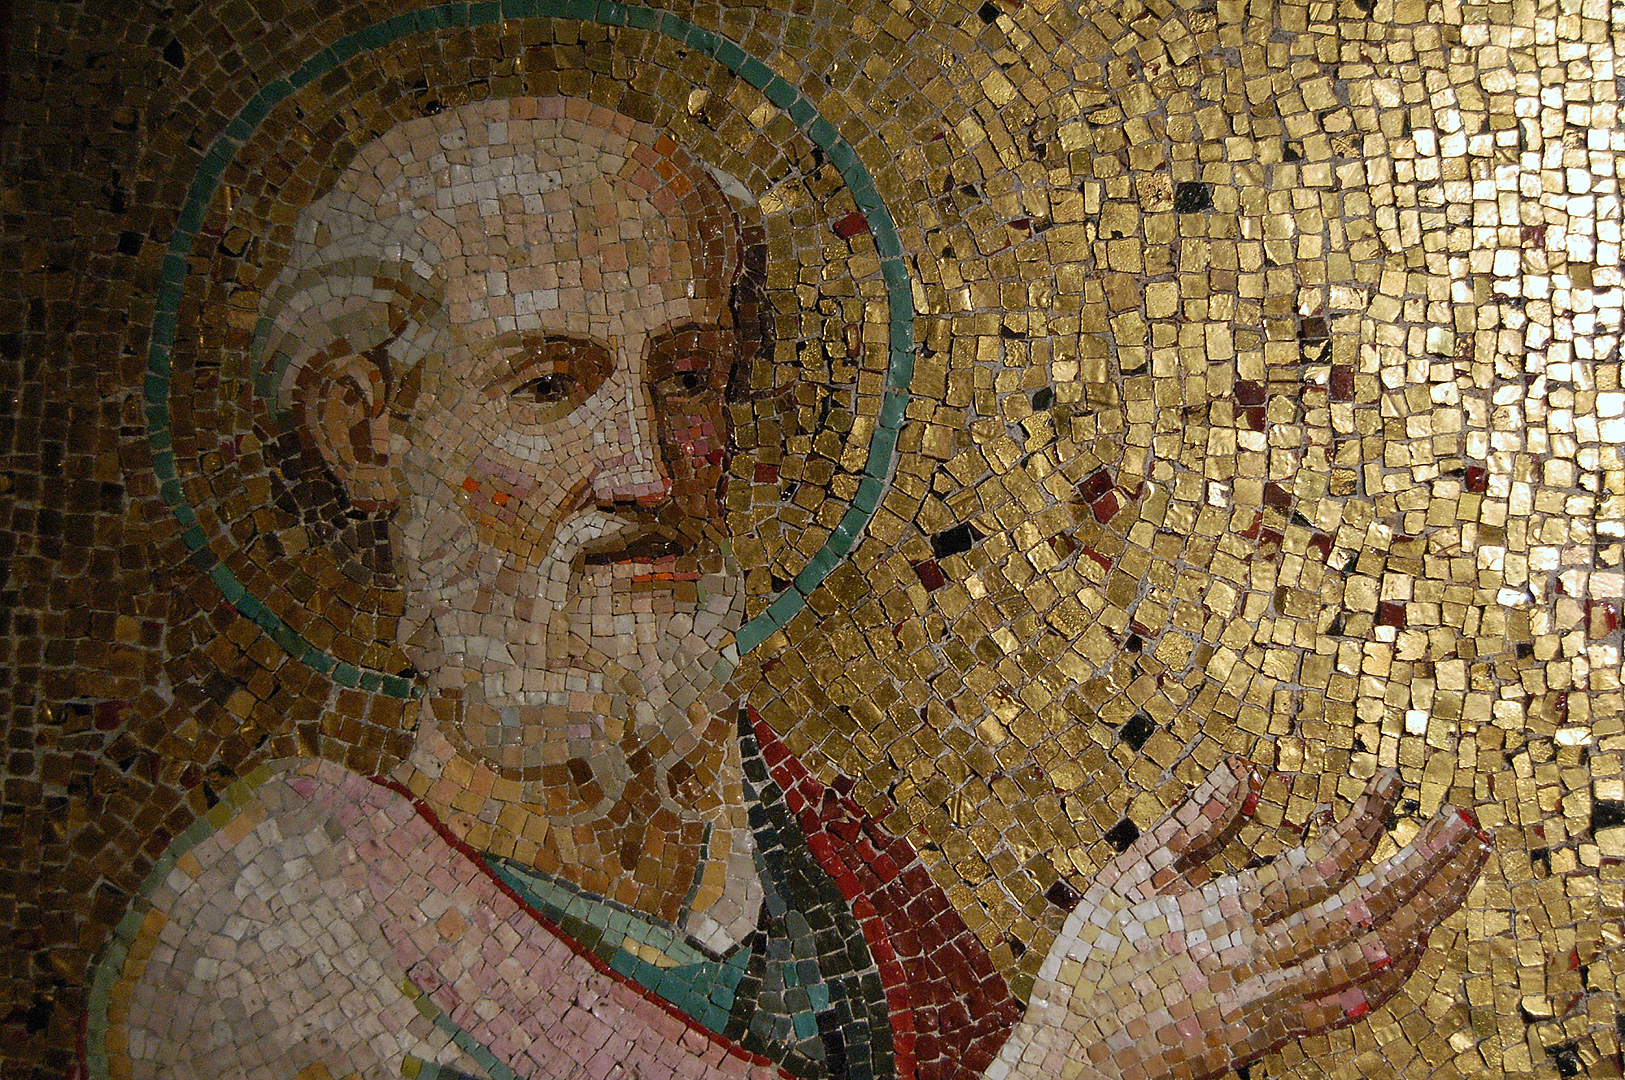 De apostel Paulus, mozaïek, Rome, The apostle Paul, mosaic, Rome